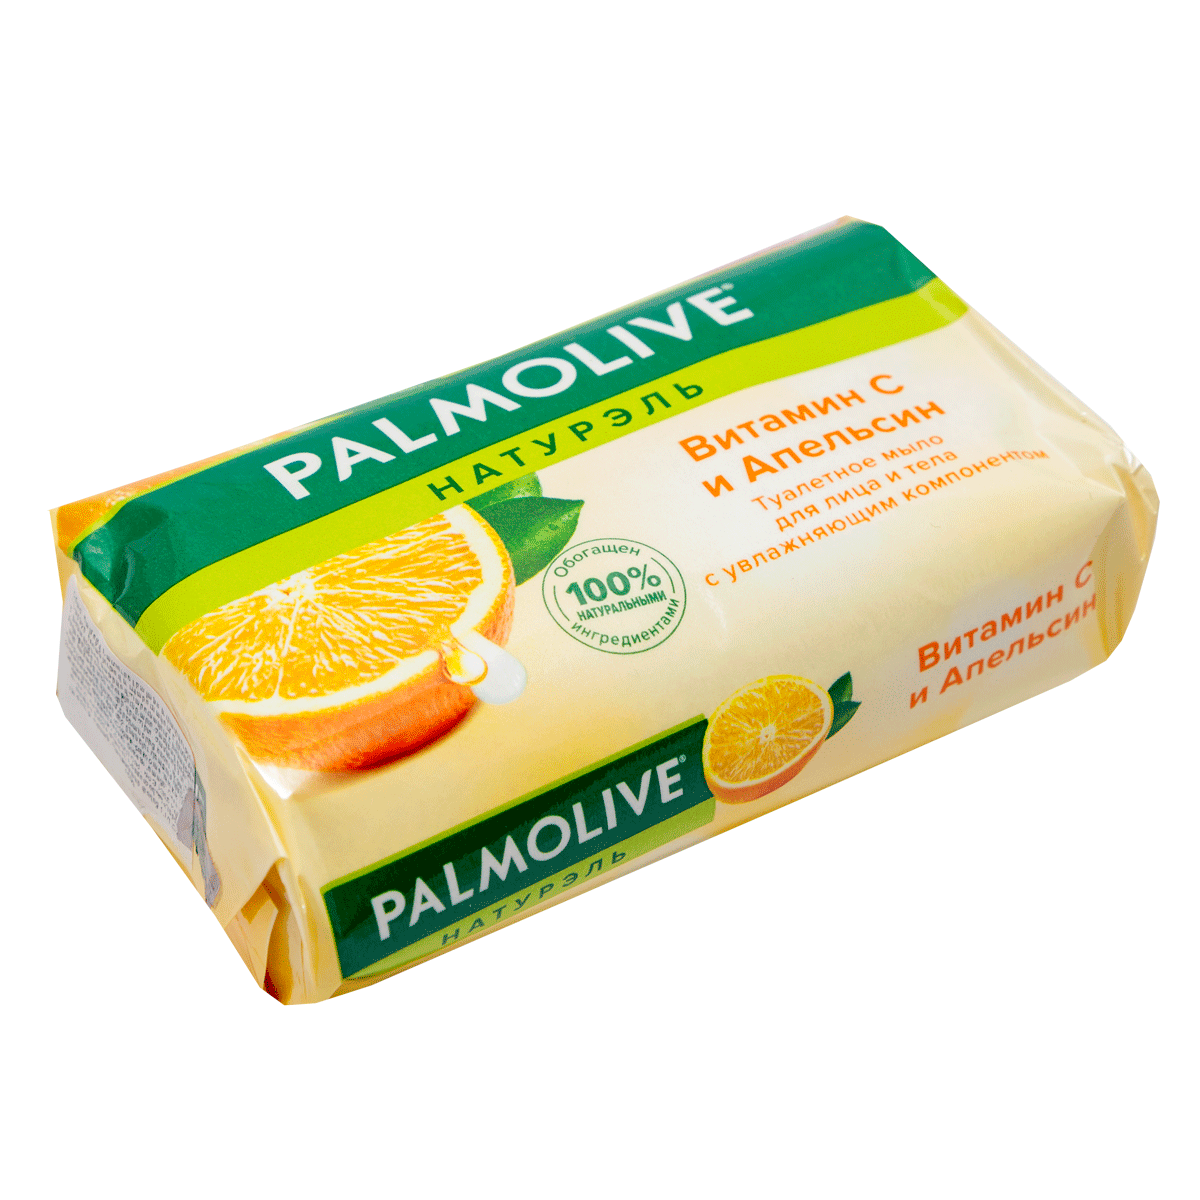 Օճառ Palmolive  